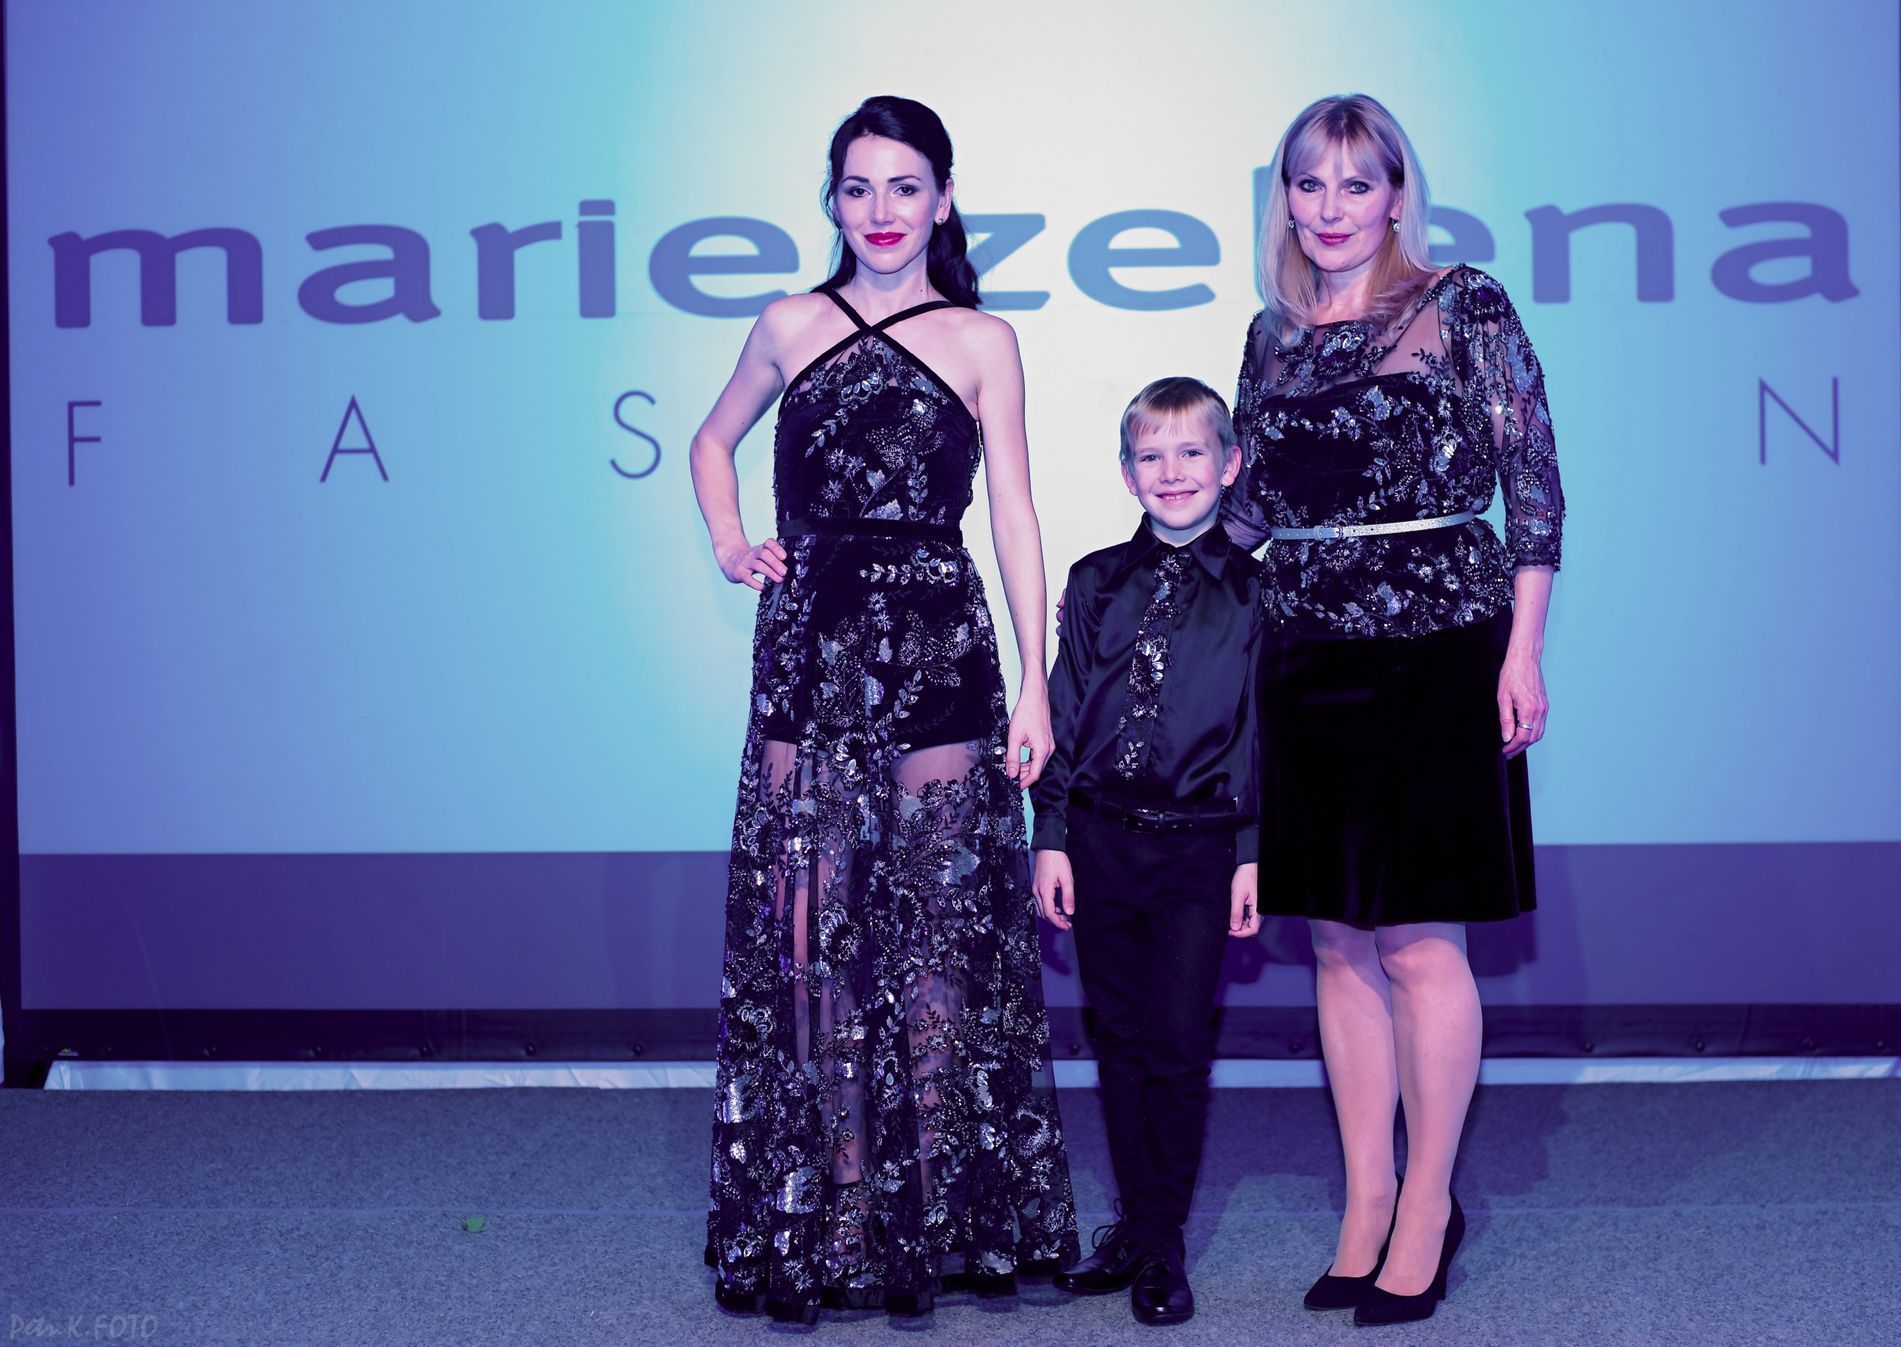 Marie Zelená se svou dcerou Martinou a jejím synem Tomášem, který už uvádí své první módní přehlídky.